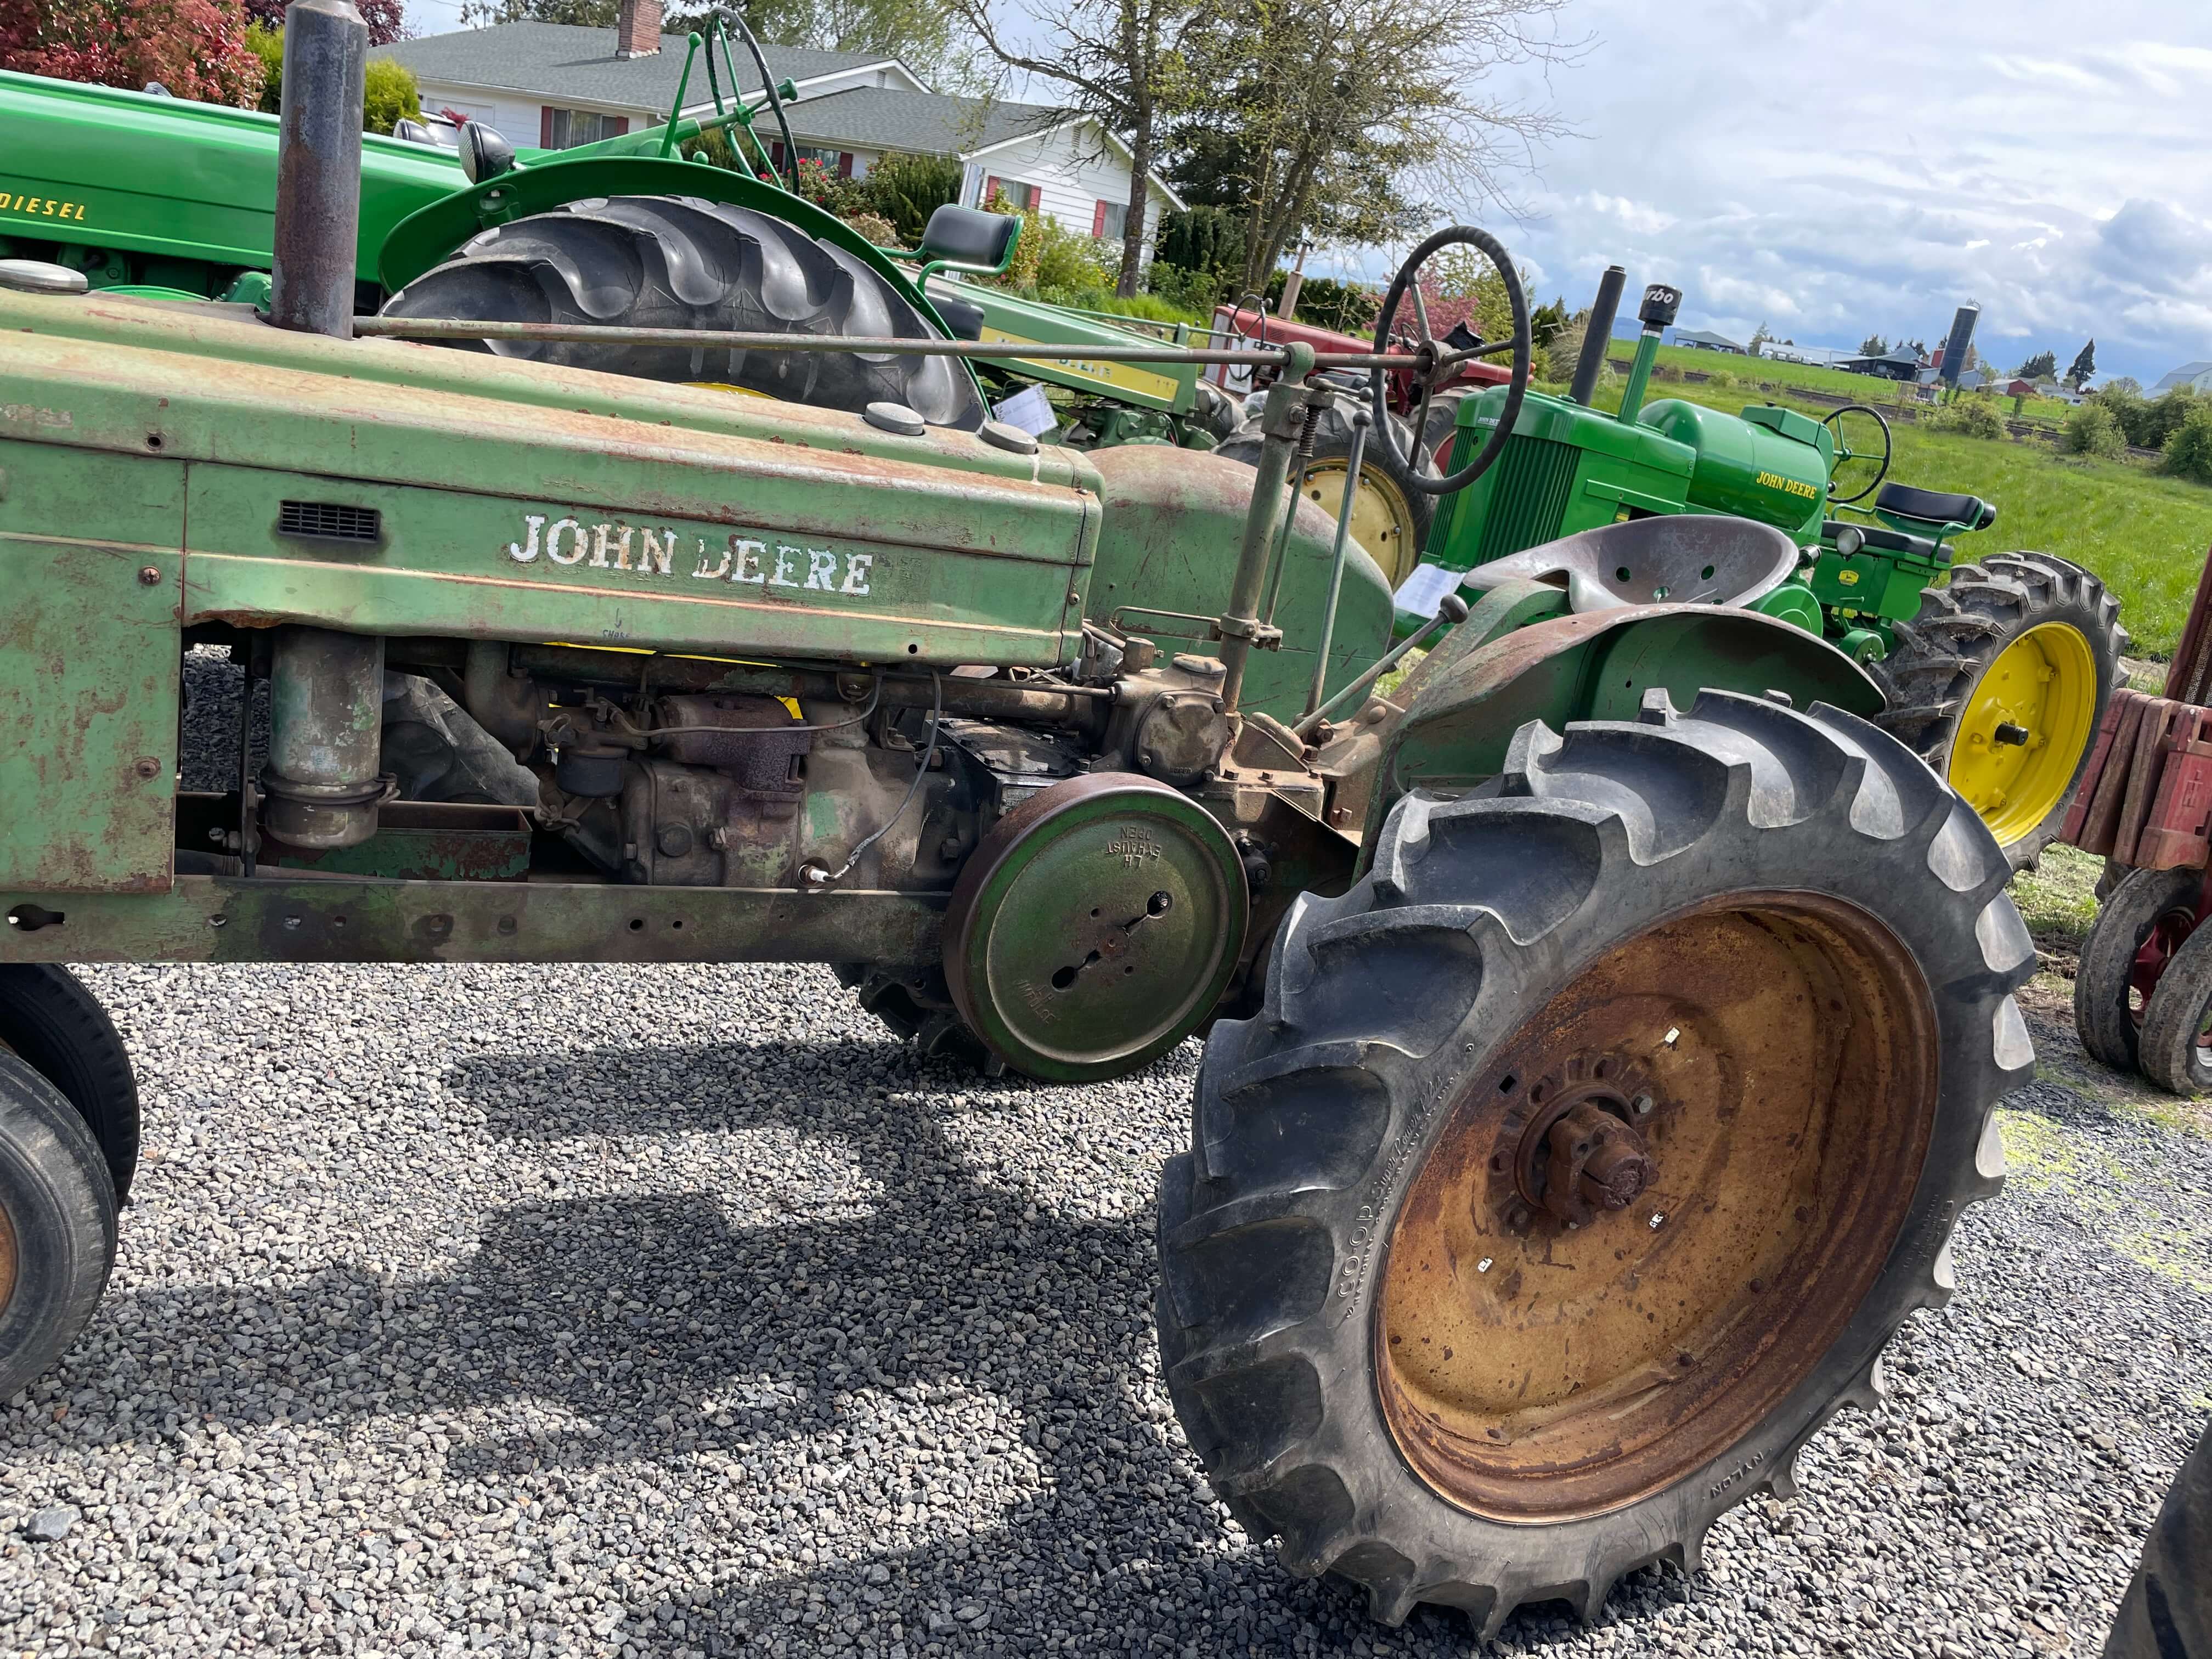 John Deer Tractor